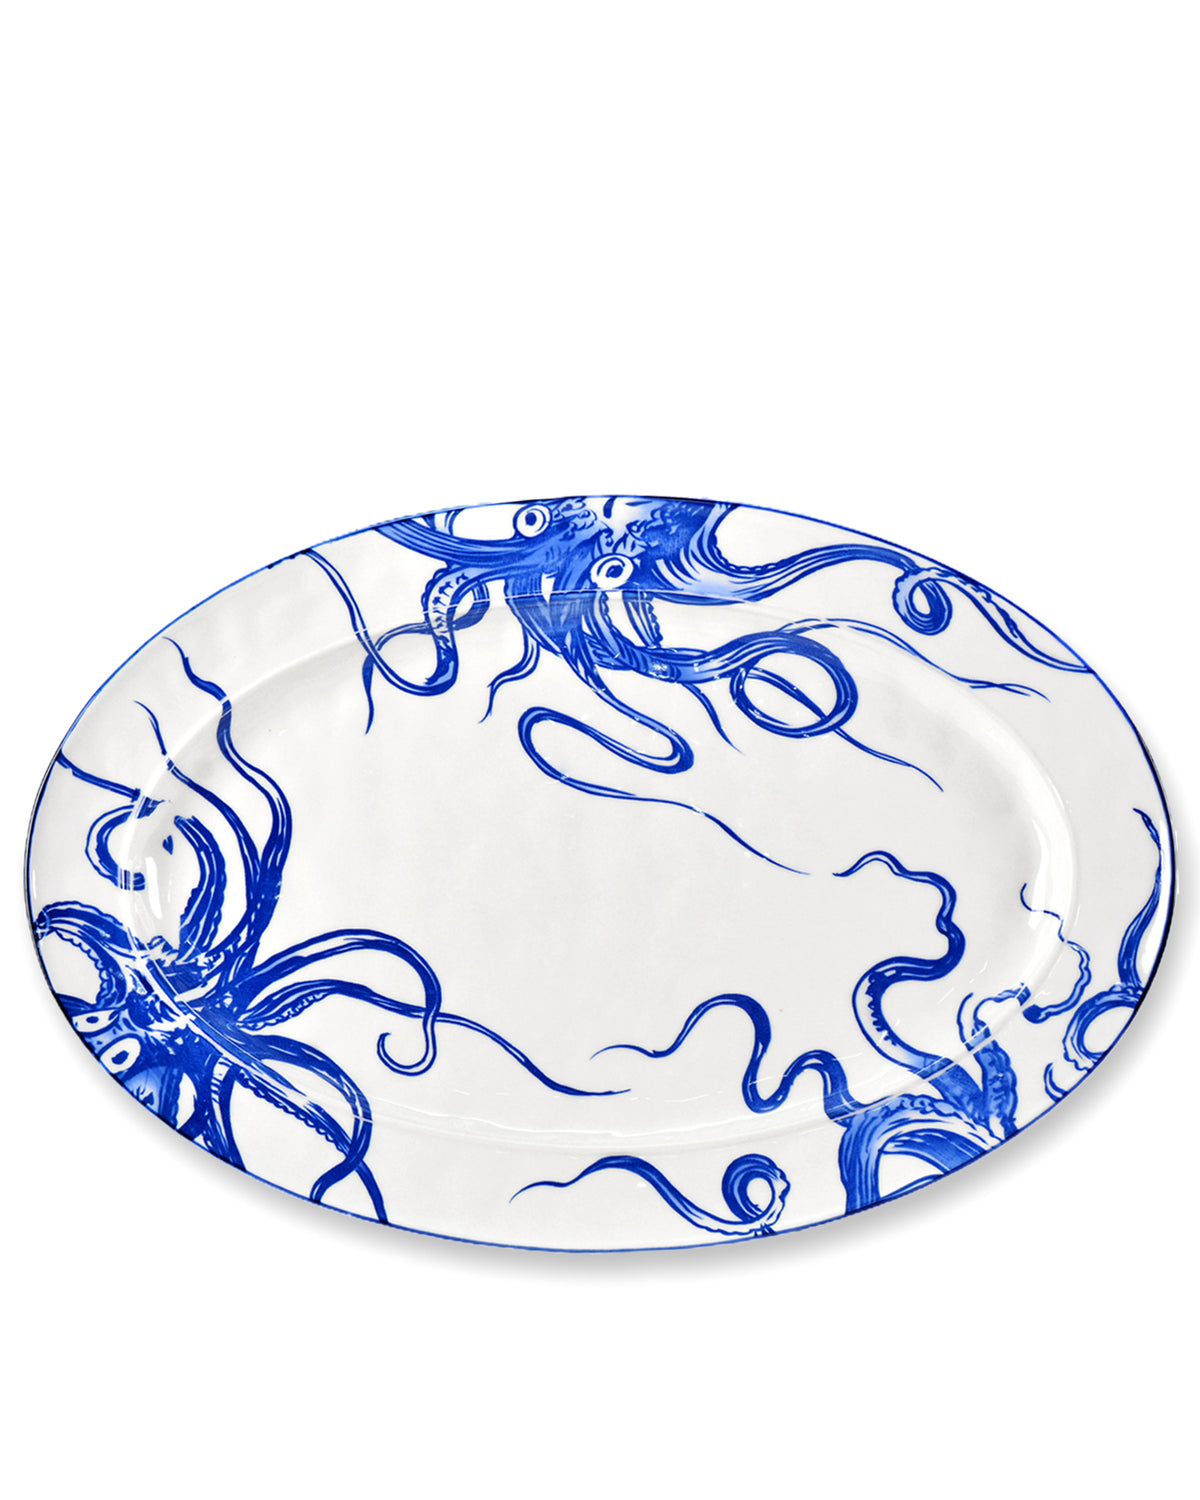 SeaFruit Oval Plate